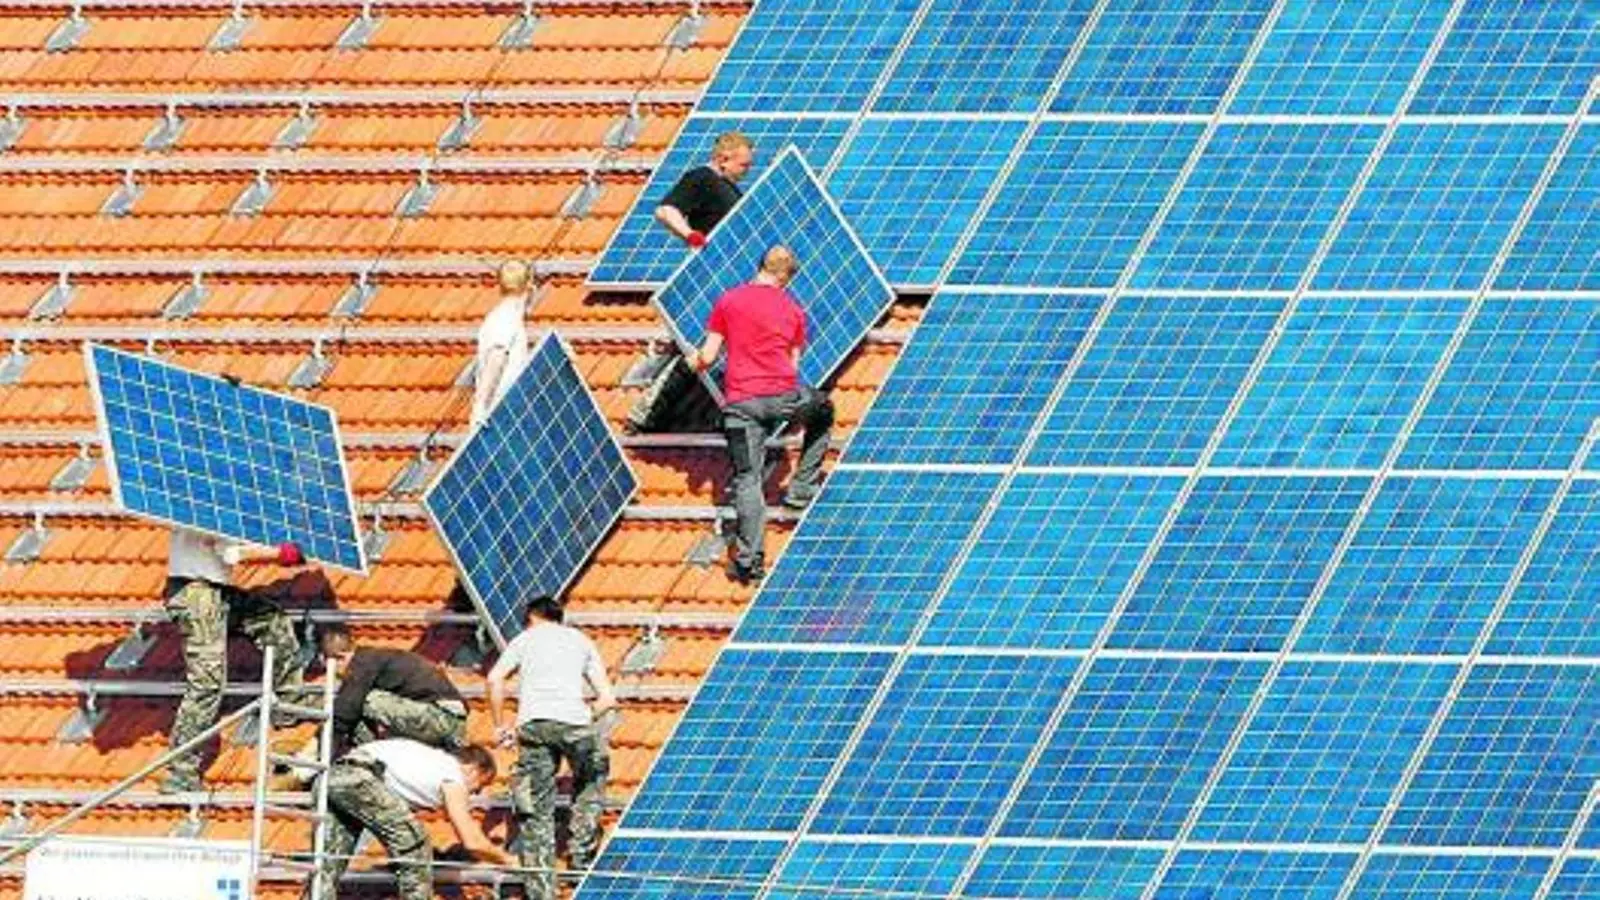 bon preu energia solar - Cuánto paga Bonpreu por los excedentes